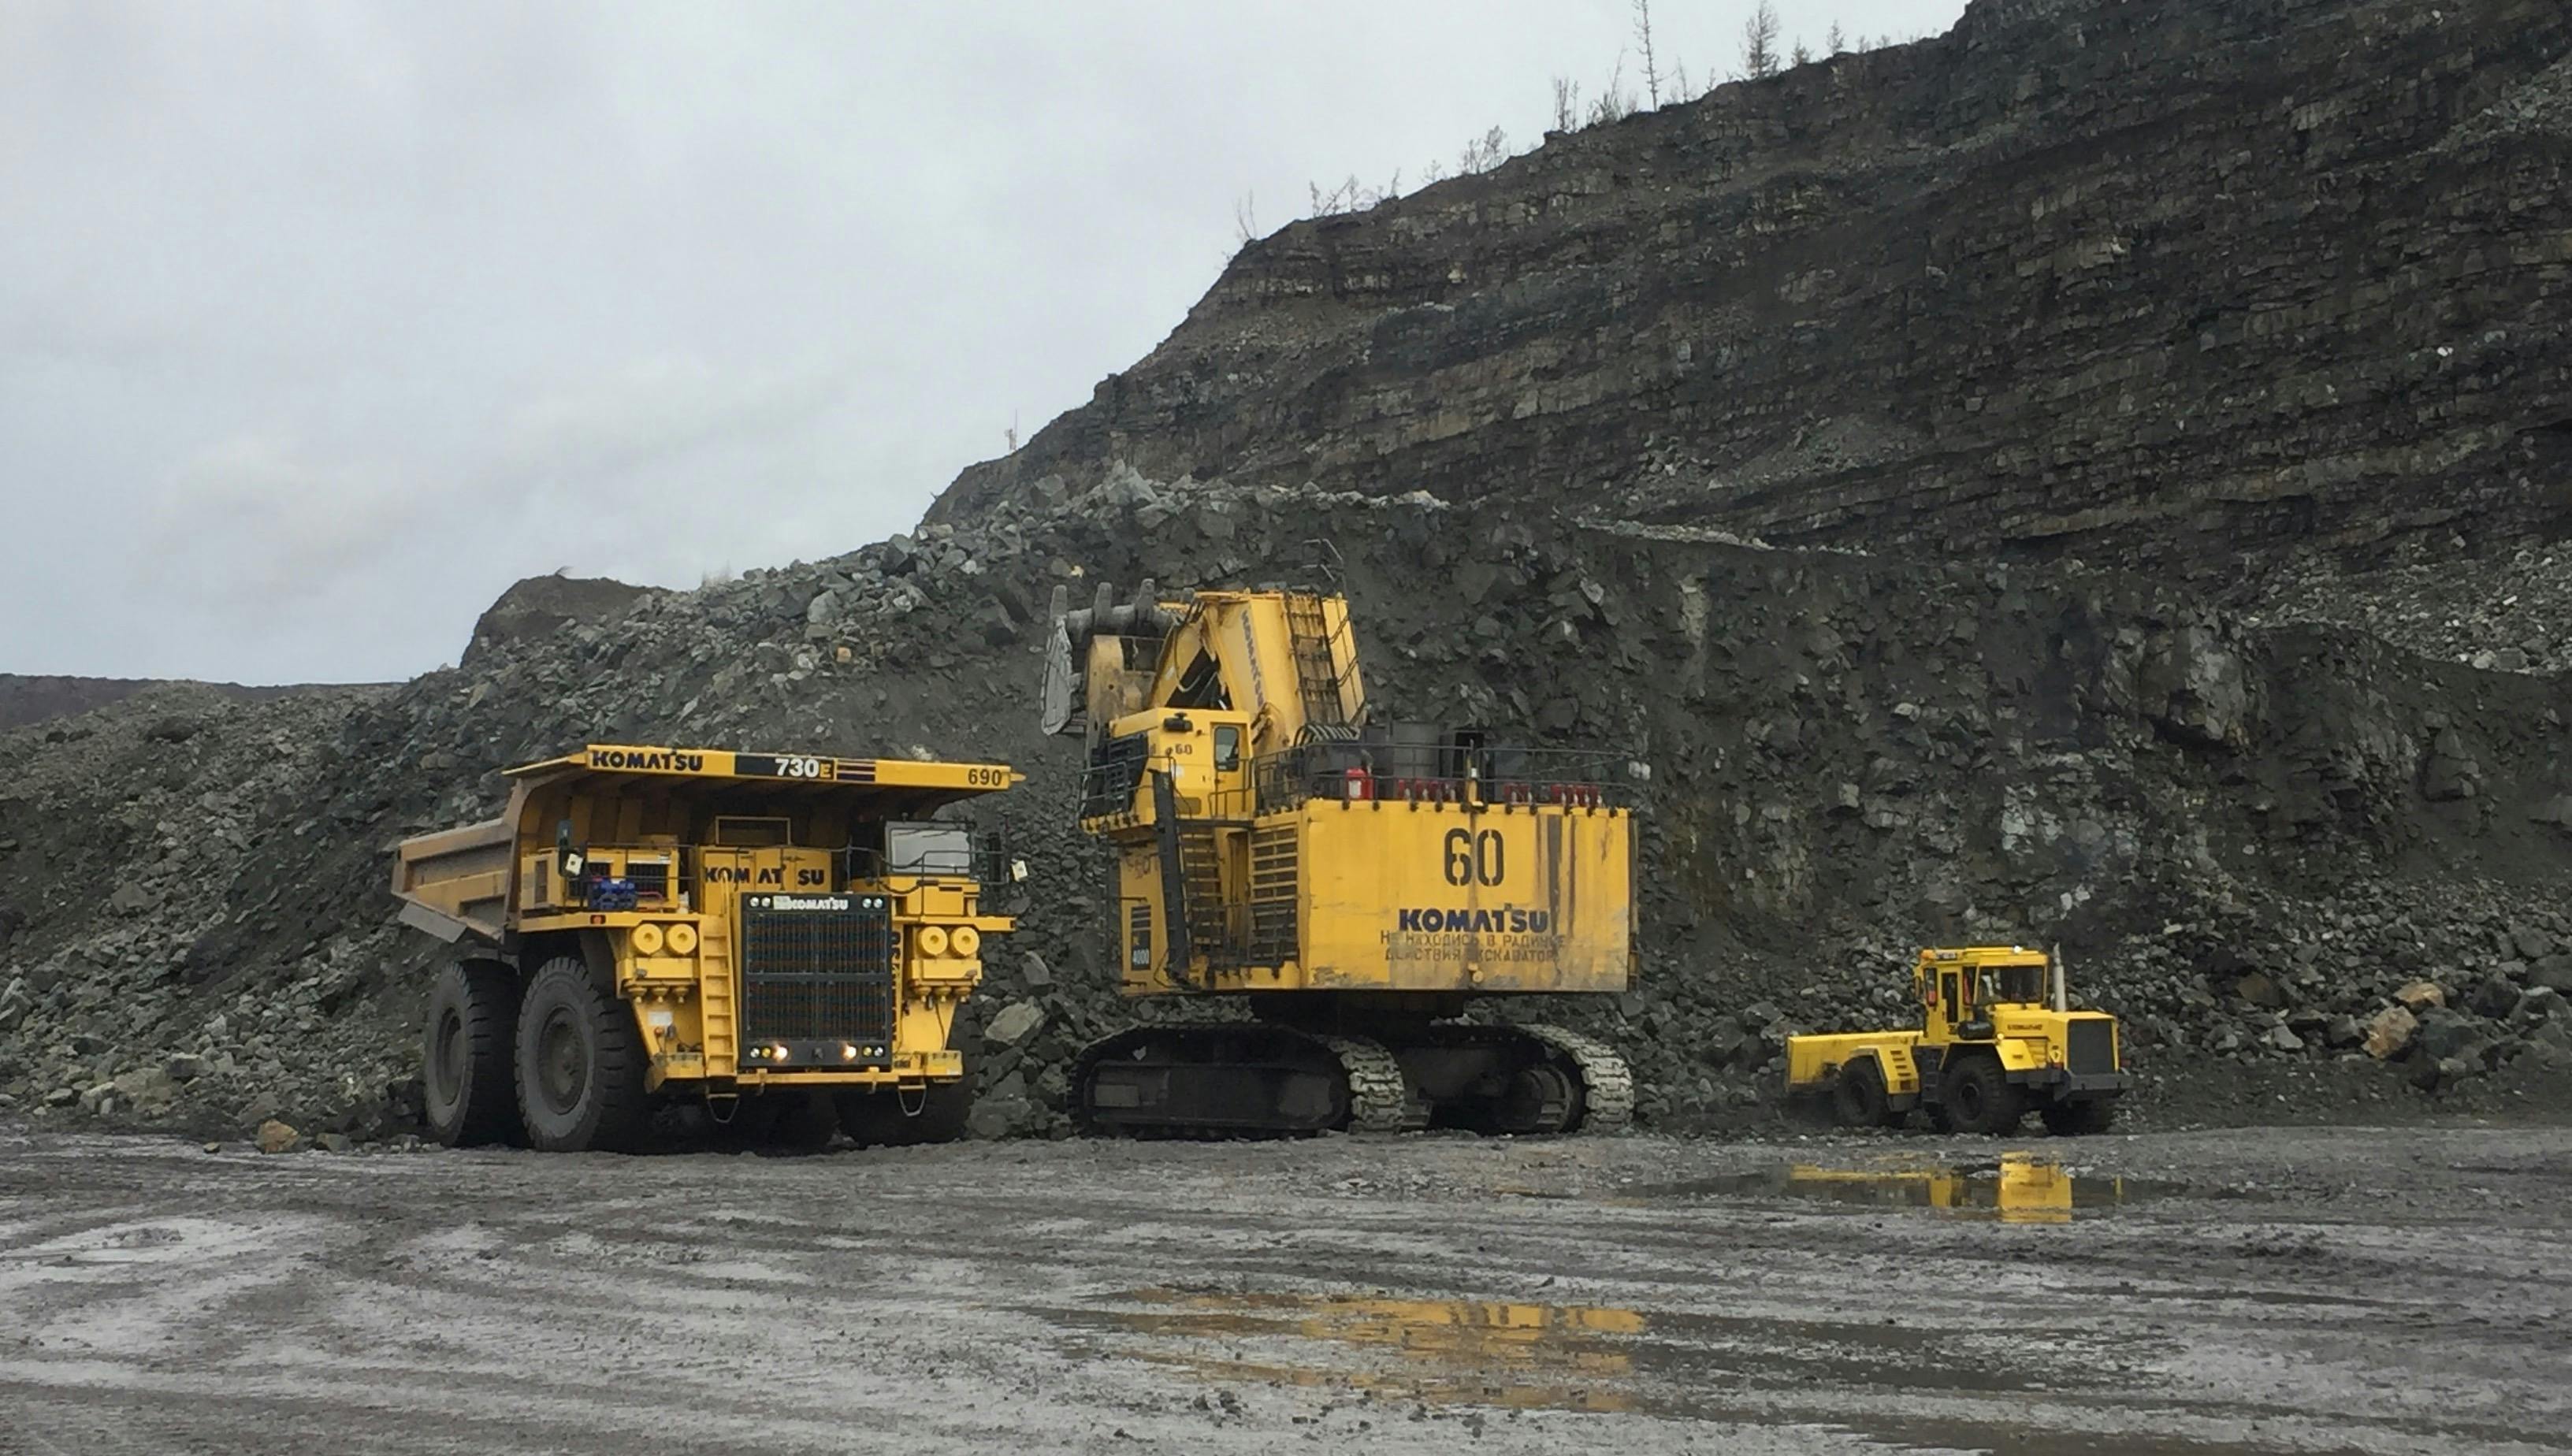 Mining vehicles image